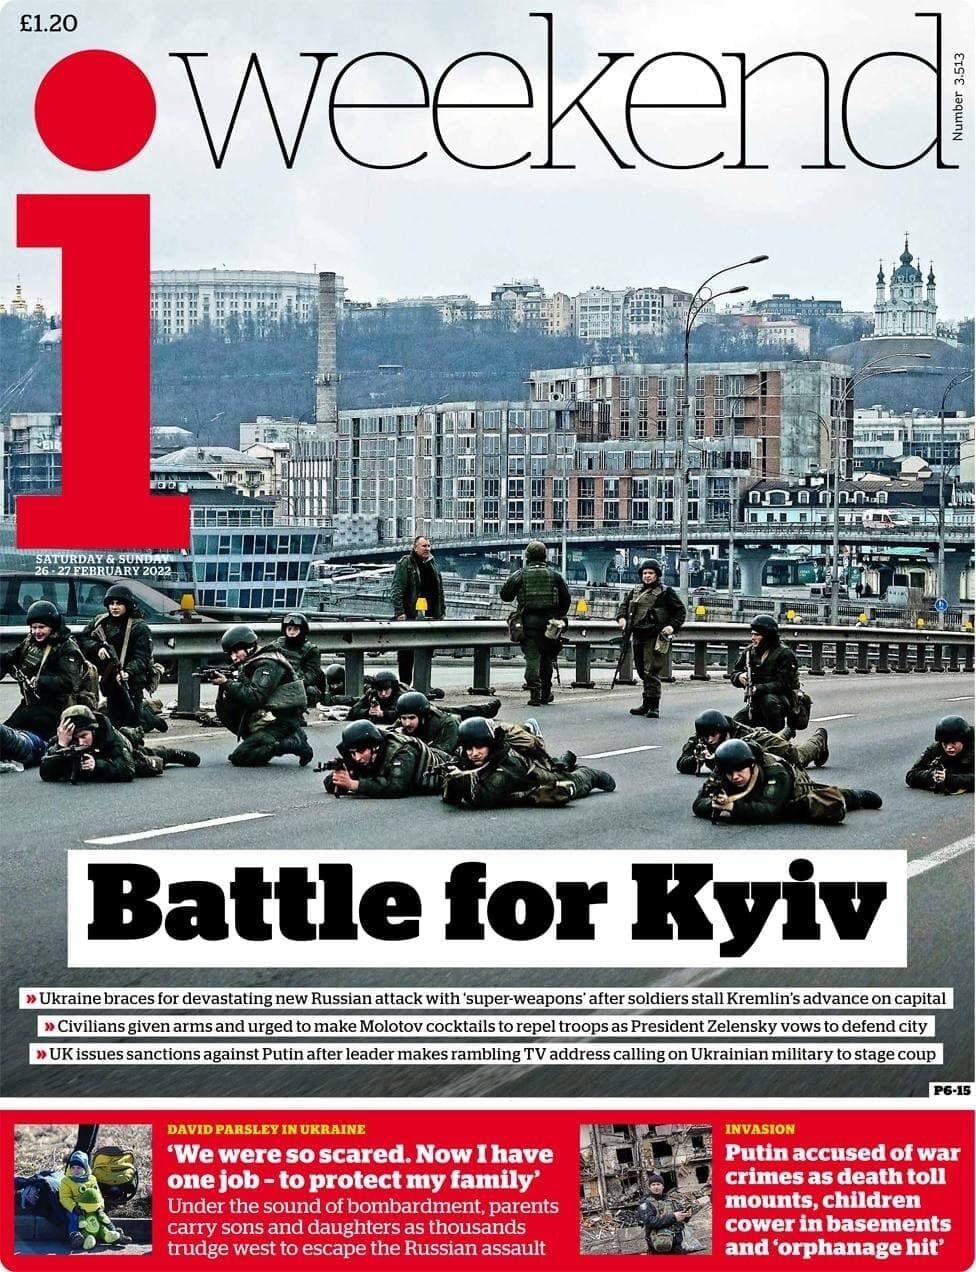 Битва за Київ тривала 25-26 лютого.